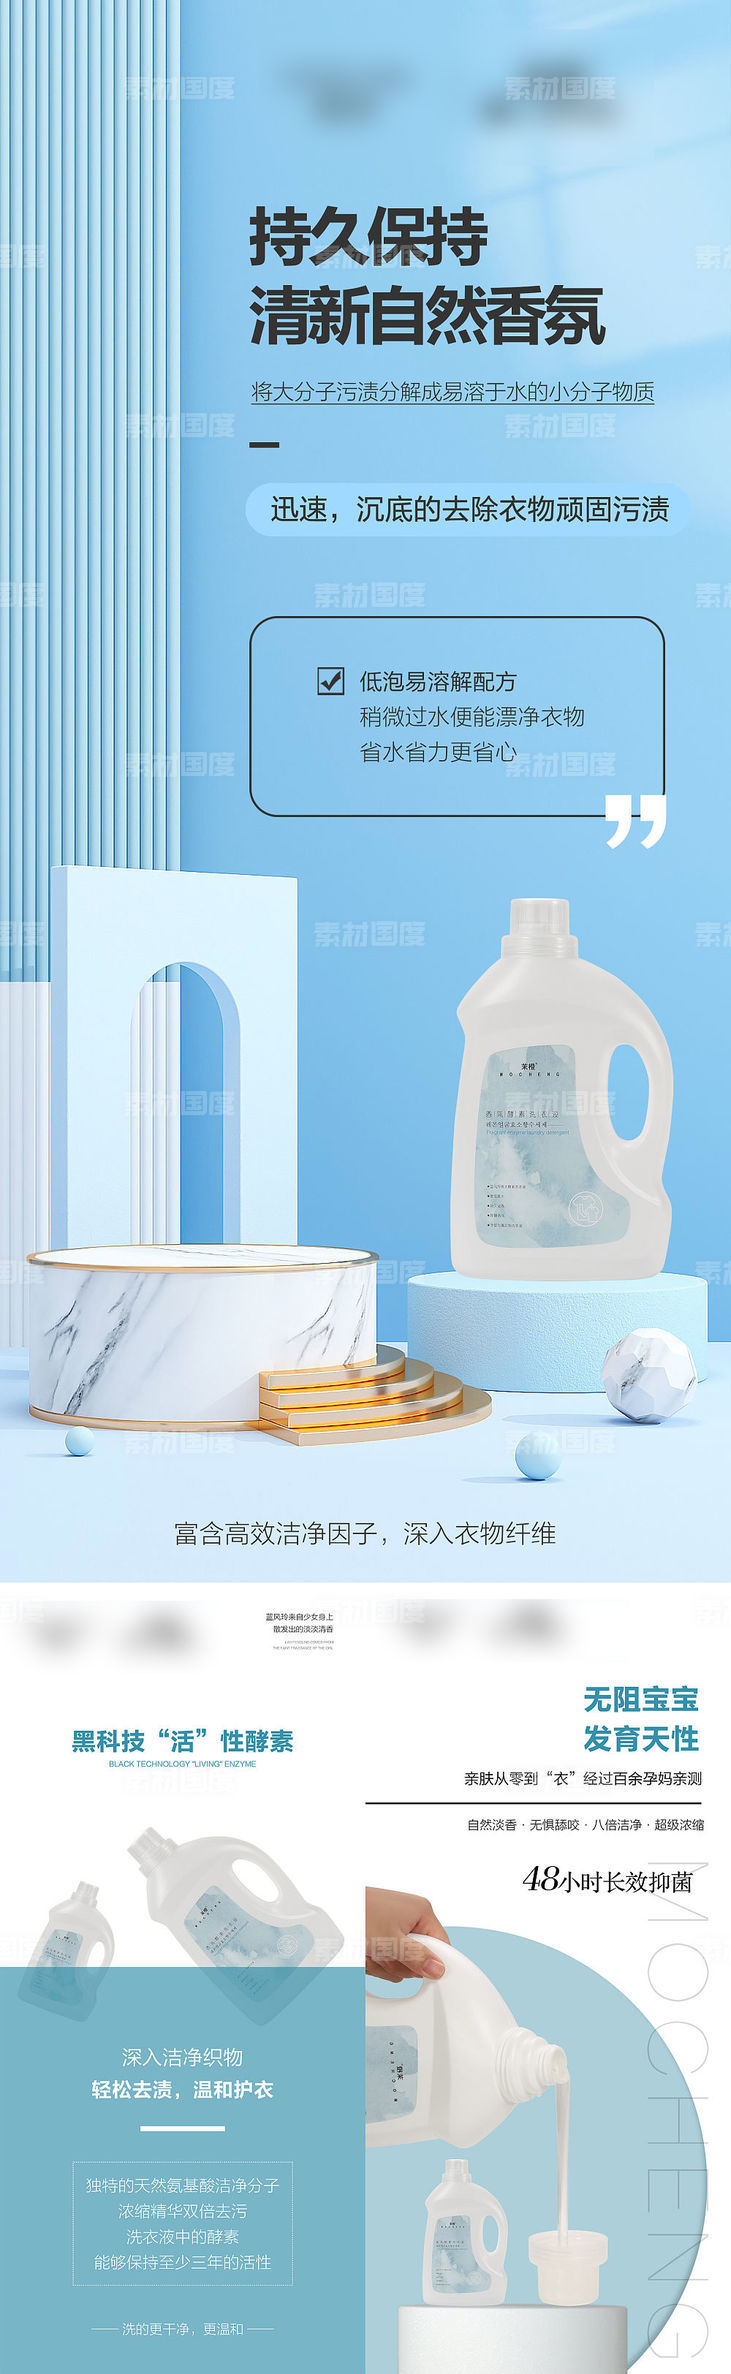 微商护肤洗衣液造势系列海报